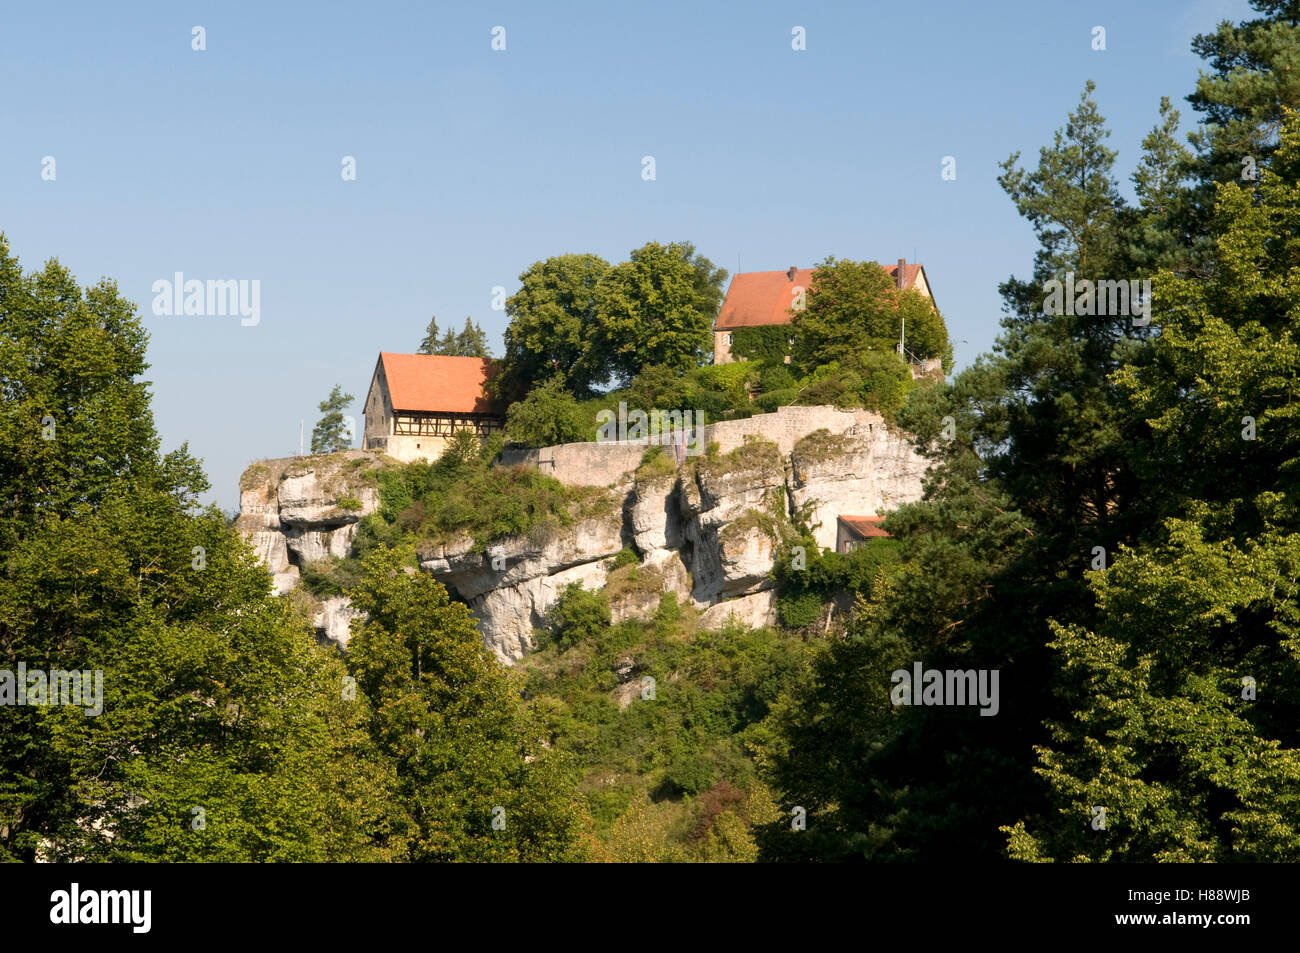 Burg Pottenstein castle towering over Pottenstein on a cliff, Naturpark Fraenkische Schweiz nature preserve Stock Photo